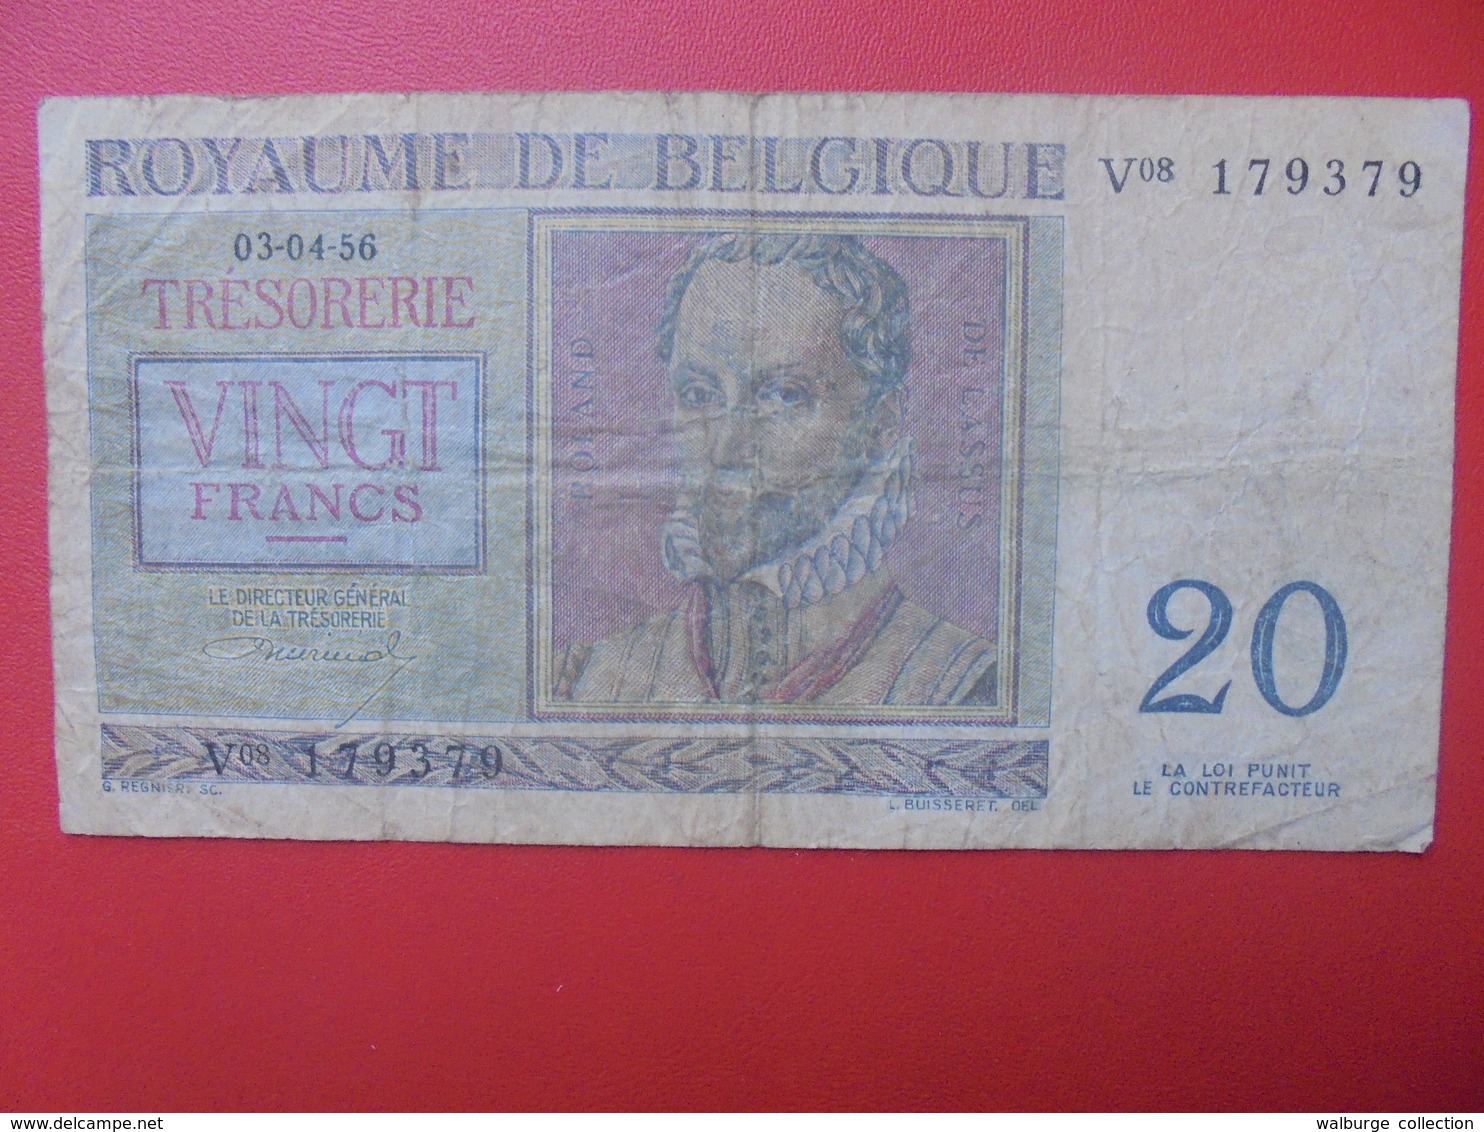 BELGIQUE 20 FRANCS 1956 CIRCULER (B.6) - 20 Francos